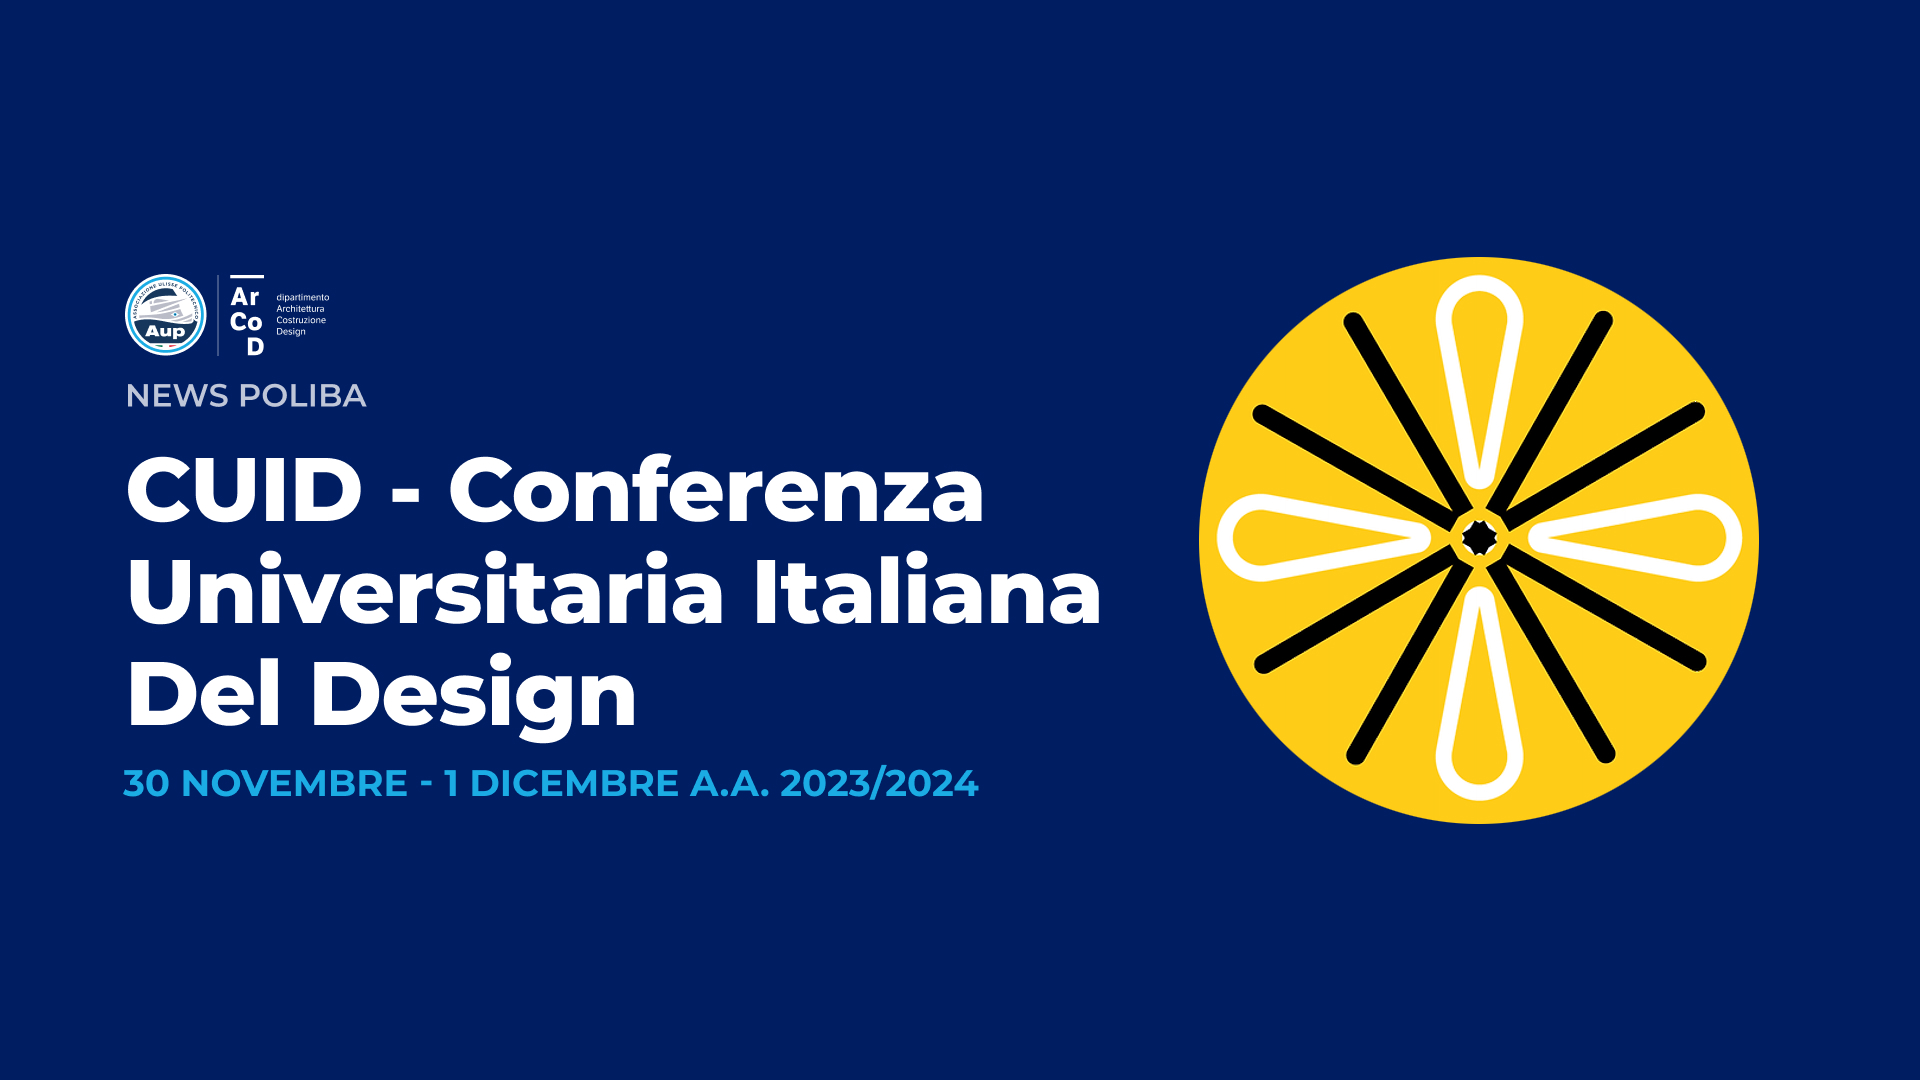 CUID - Conferenza Universitaria Italiana del Design - A.A.2023/24